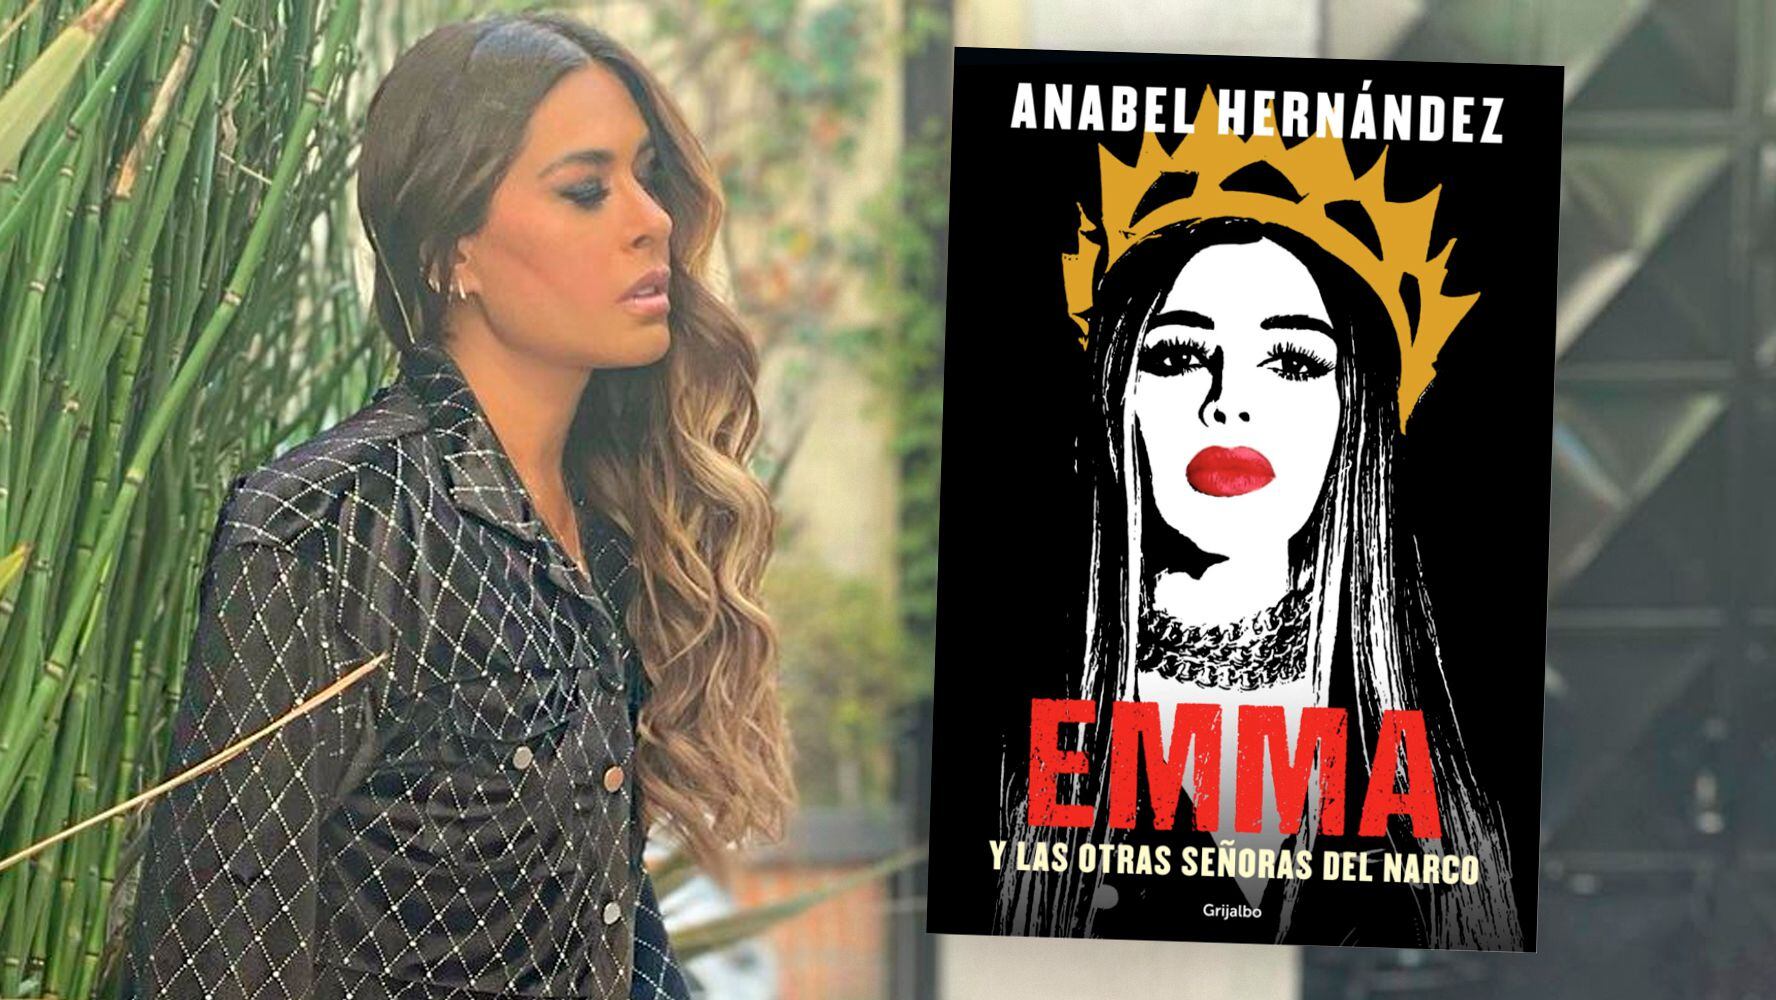 Galilea Montijo es una de las mujeres que Anabel Hernandez menciona en su libro Emma y las otras señoras del narco. (Foto: Especial)